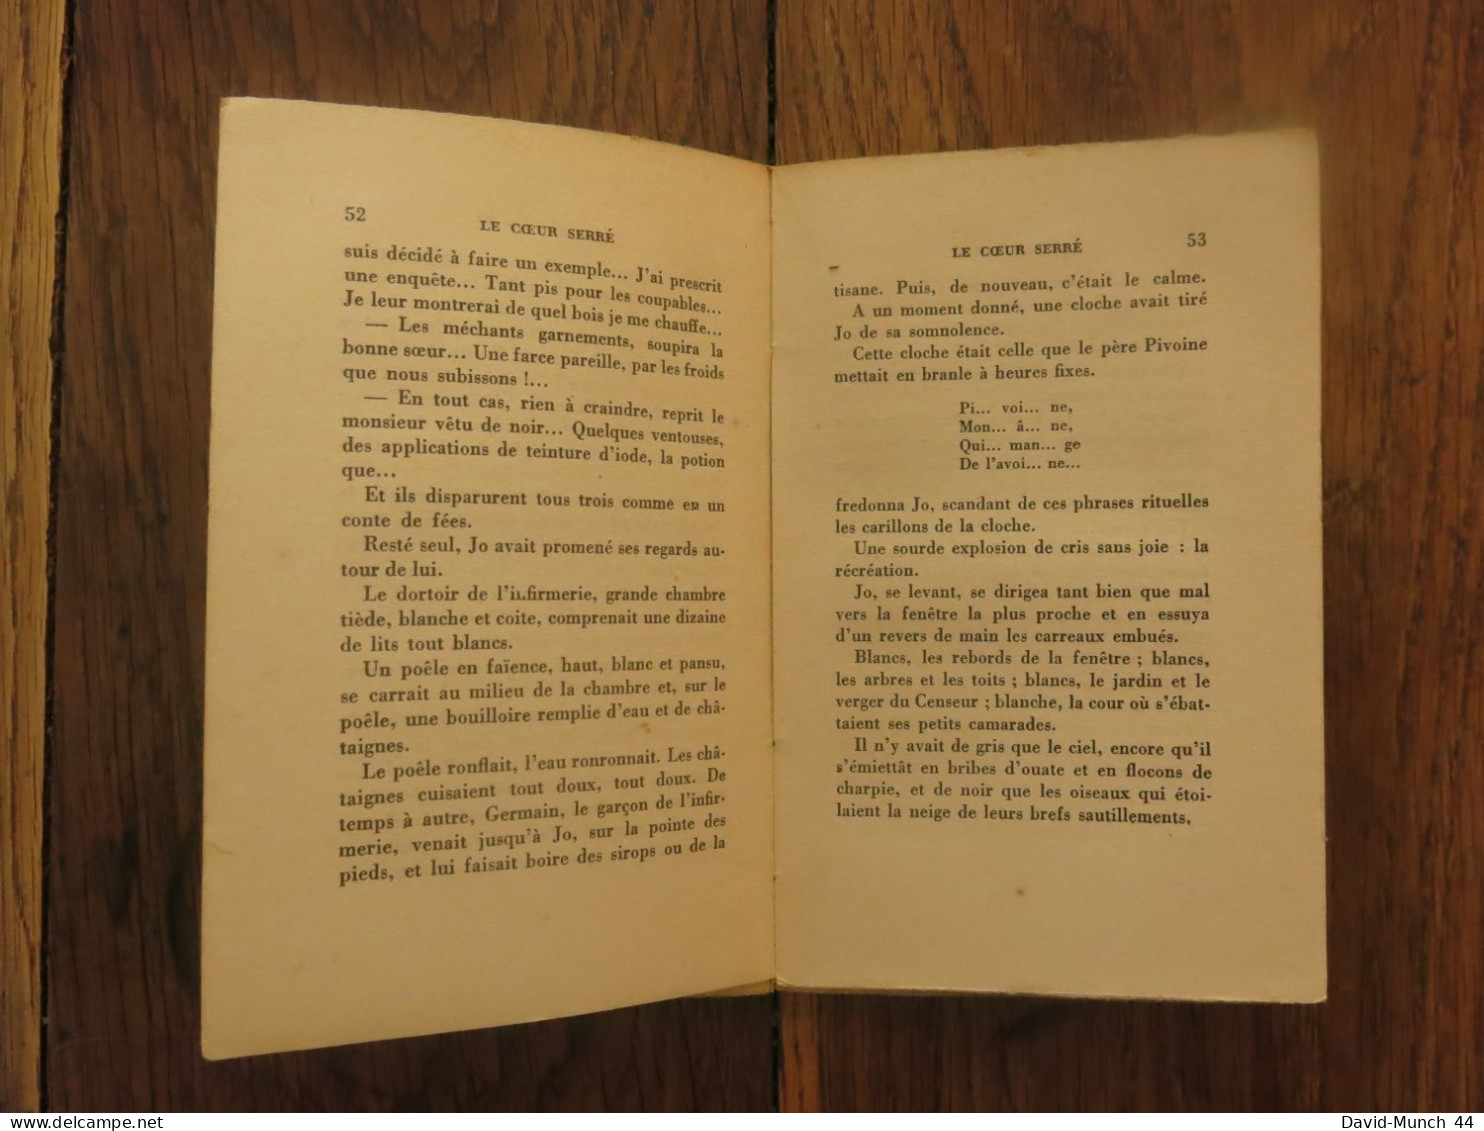 Le Cœur serré de René Maran. Albin Michel, éditeur, Paris. 1931, édition originale sur Alfa